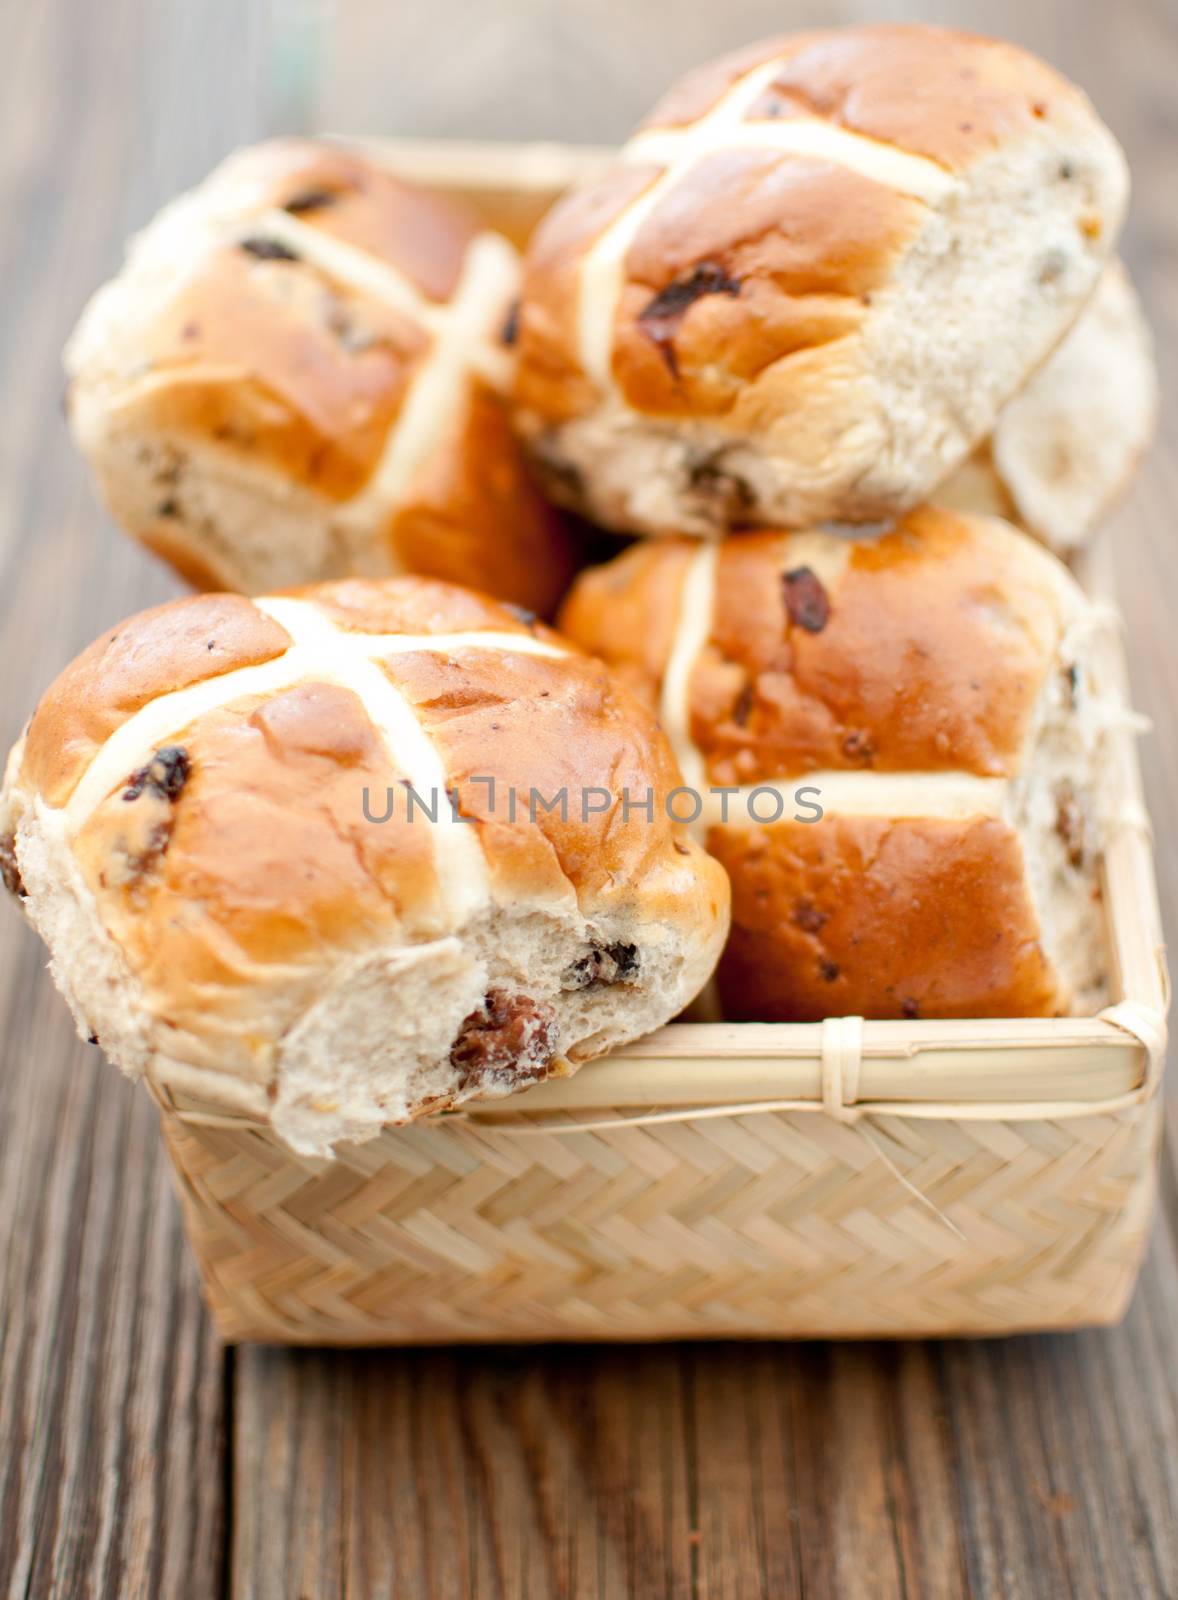 Freshly baked hot cross buns